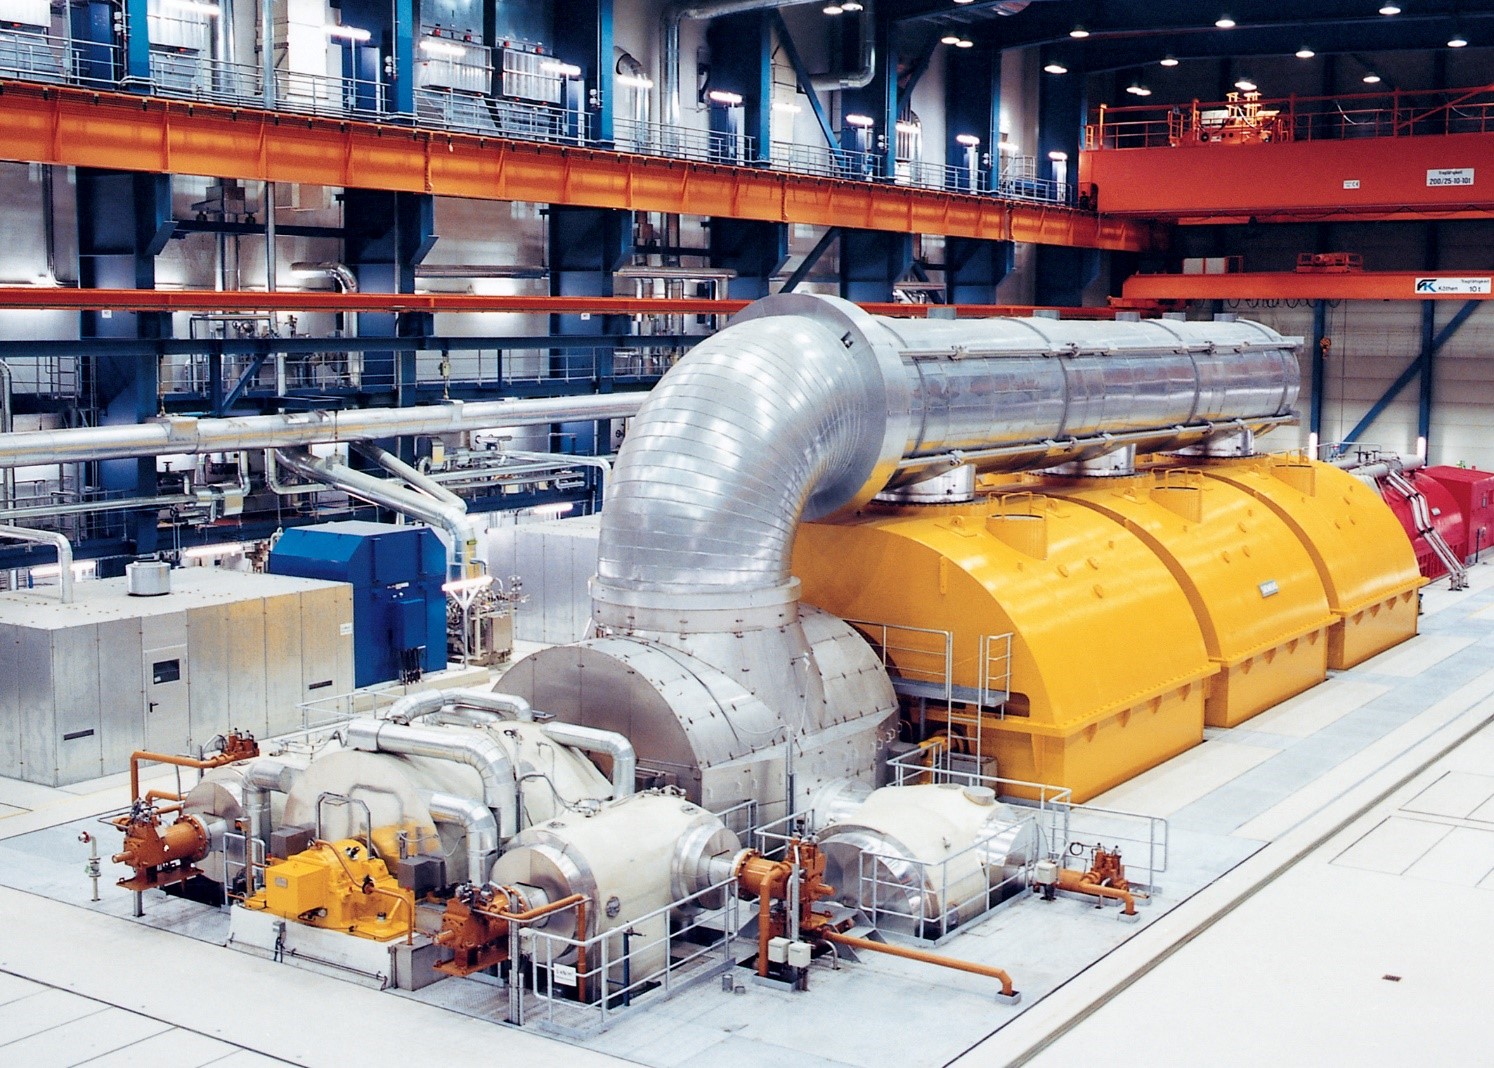 Hệ thống tổ máy sản xuất điện năng từ điện khí LNG của General Electric là cơ hội phát triển hệ thống khoa học kỹ thuật và năng lượng của Việt Nam